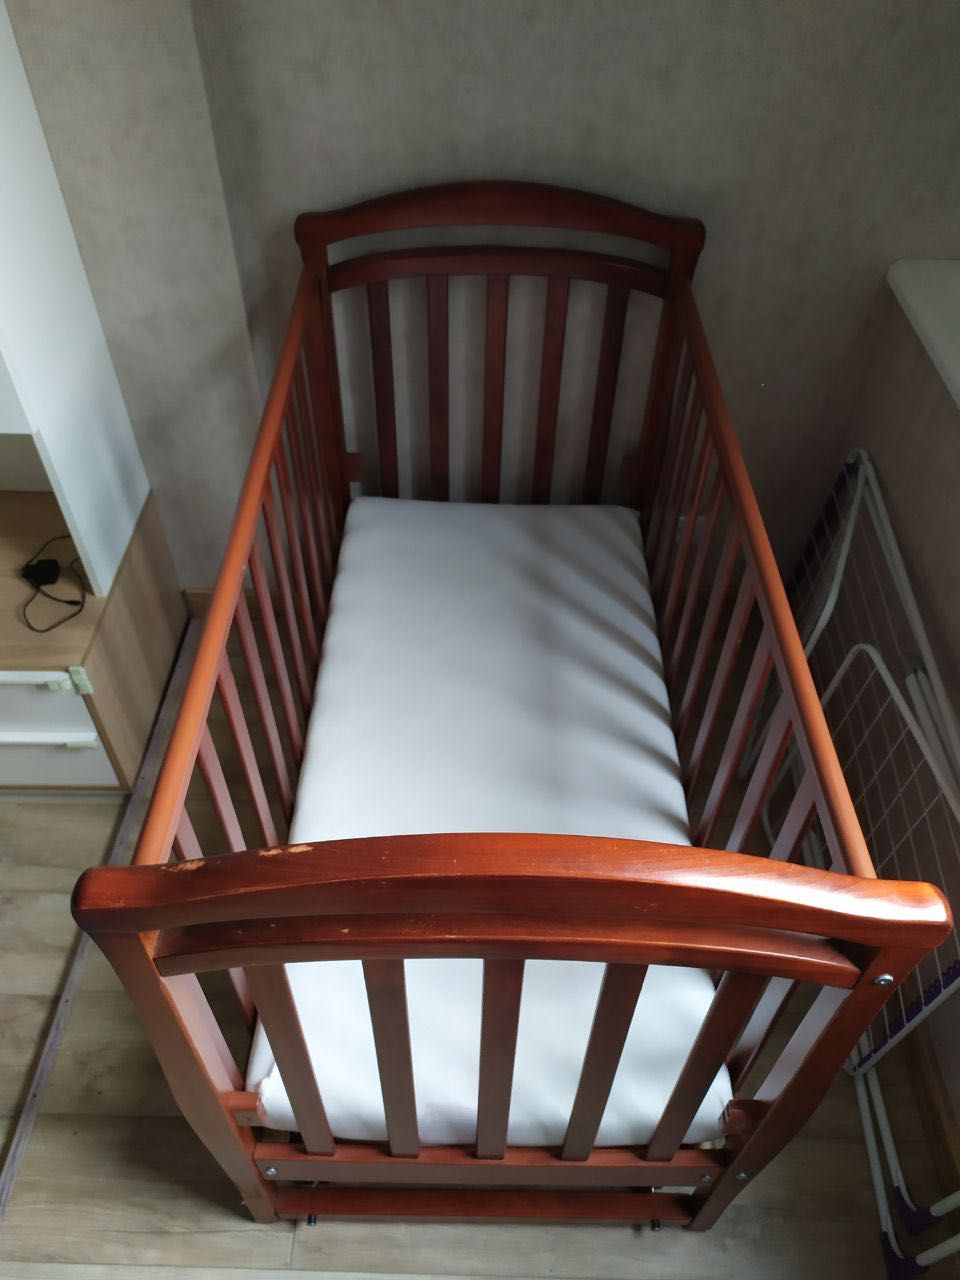 Дитяче ліжко Верес